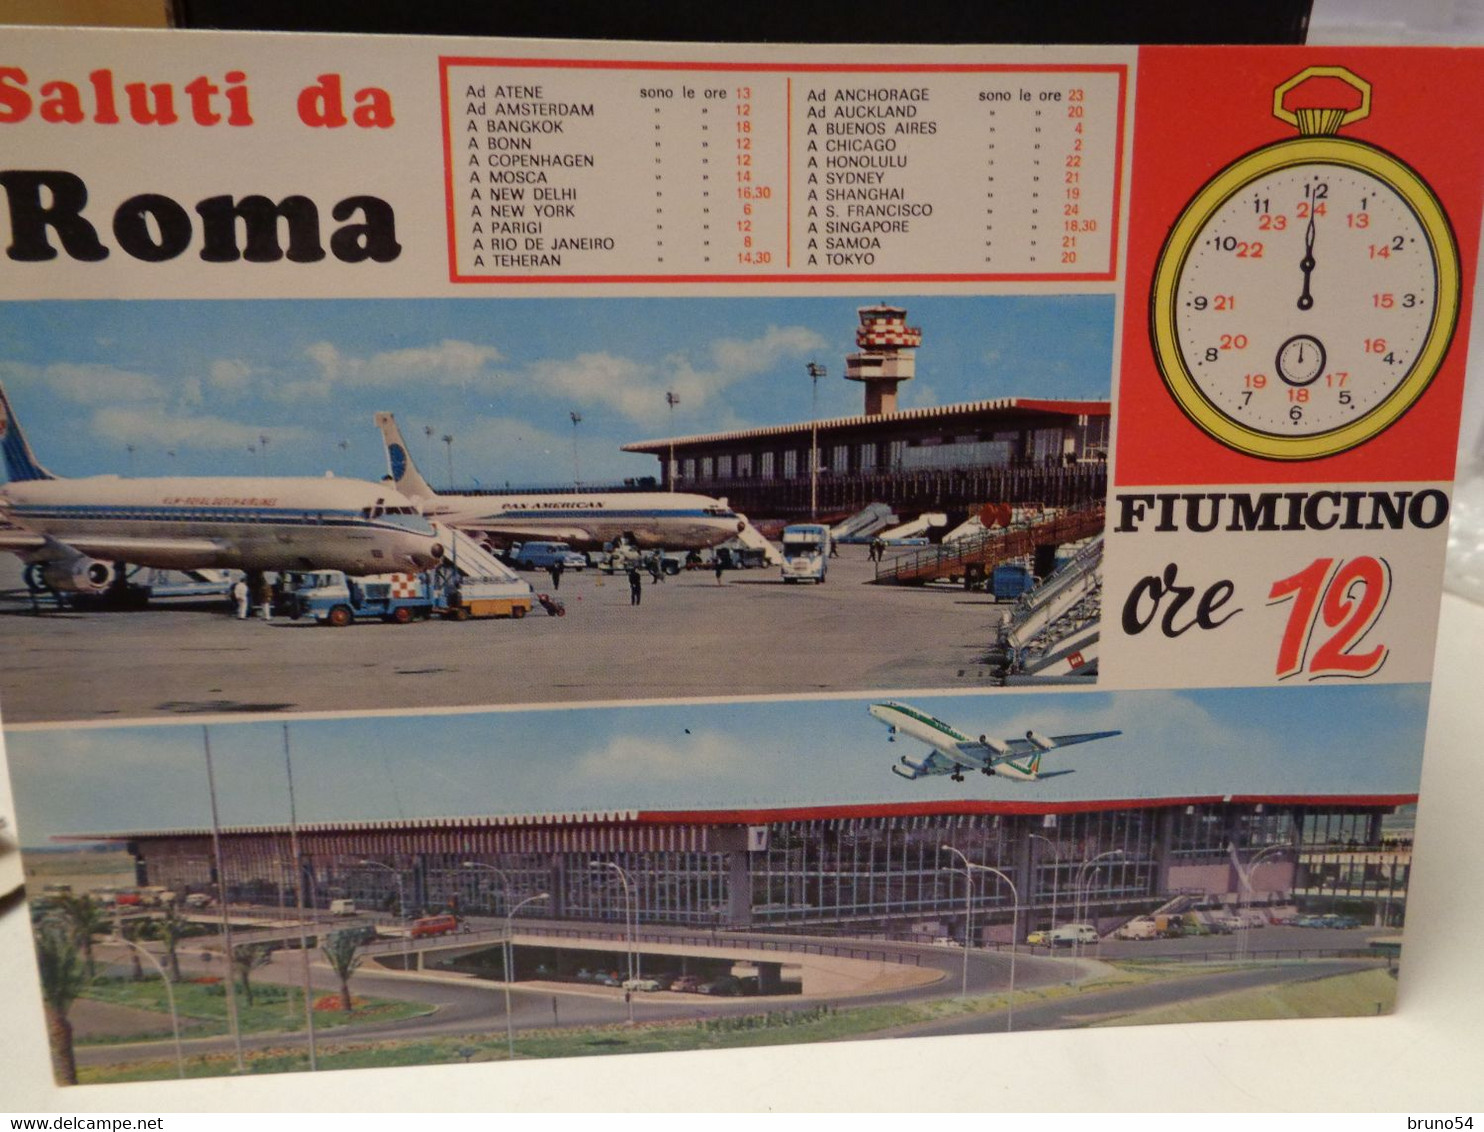 Cartolina Saluti Da Roma Fiumicino Ore 12 , Tabella Delle Destinazioni , Aere KLM E Alitalia - Transport